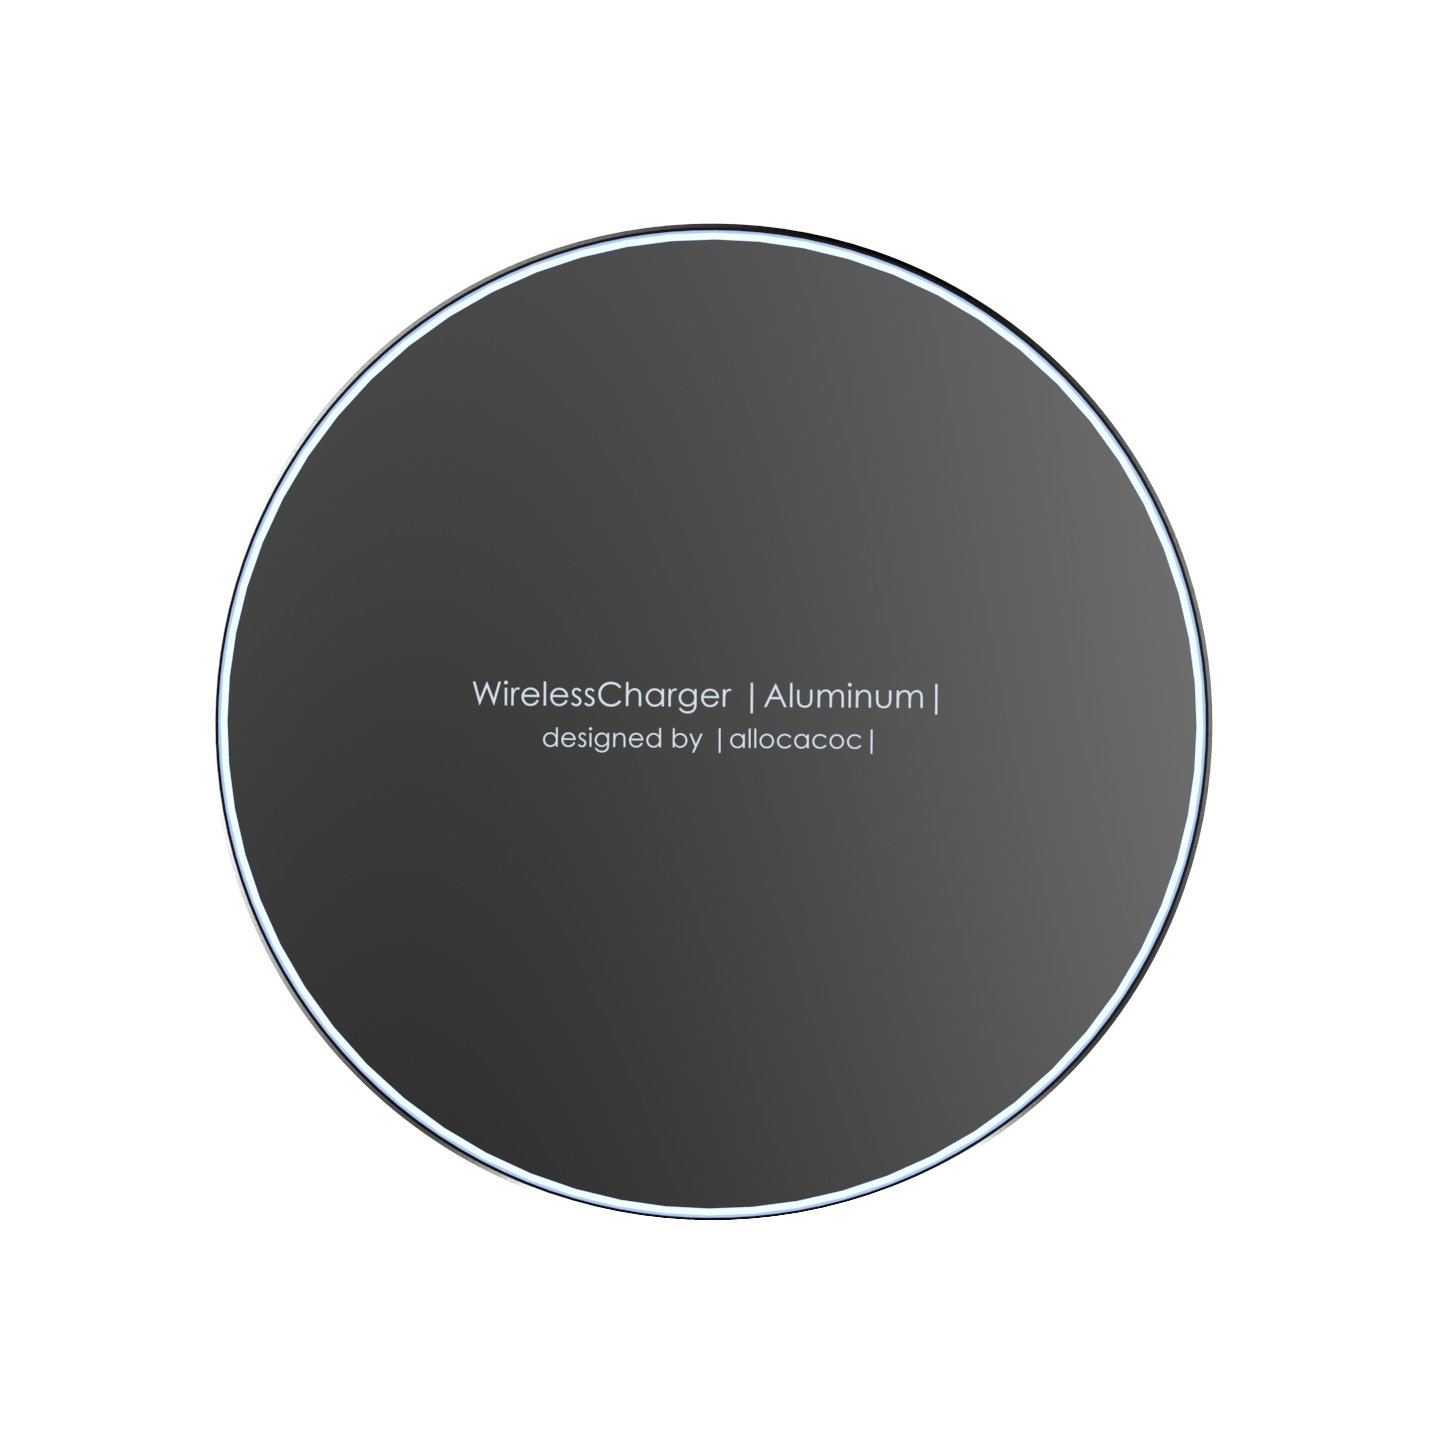 Designnest Wireless Charger |Aluminium| Βάση ασύρματης φόρτισης (μαύρη)